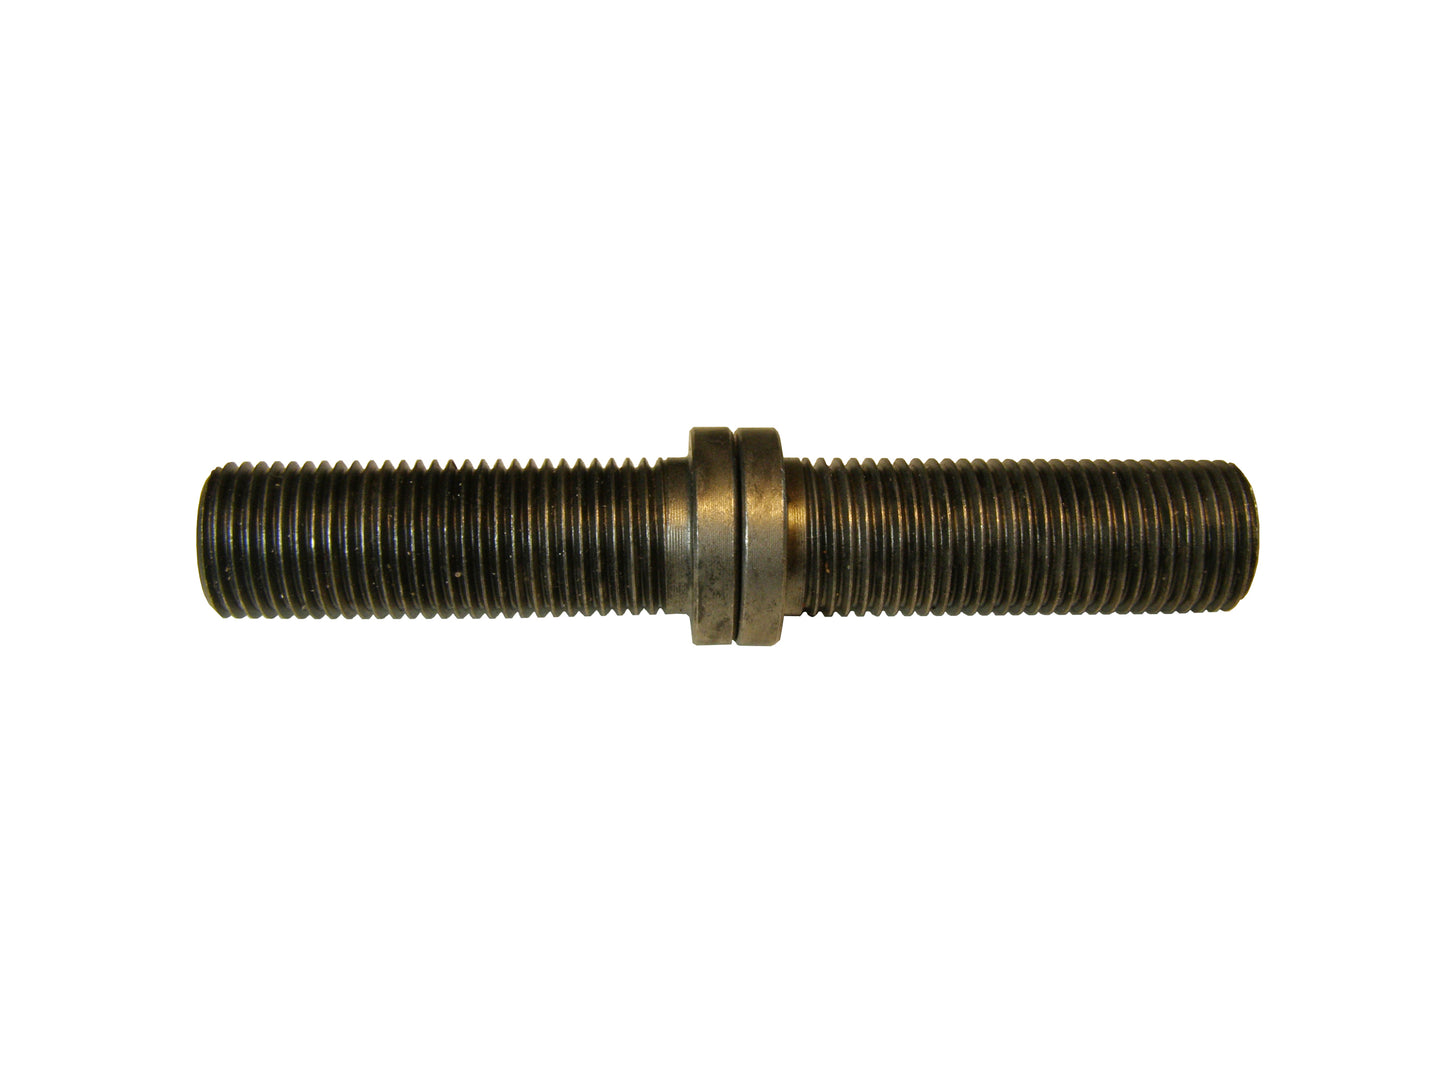 Dowel Pin Set, 5/16" x 1.5" Male, 5/16" x 1.5 Female, KC4425